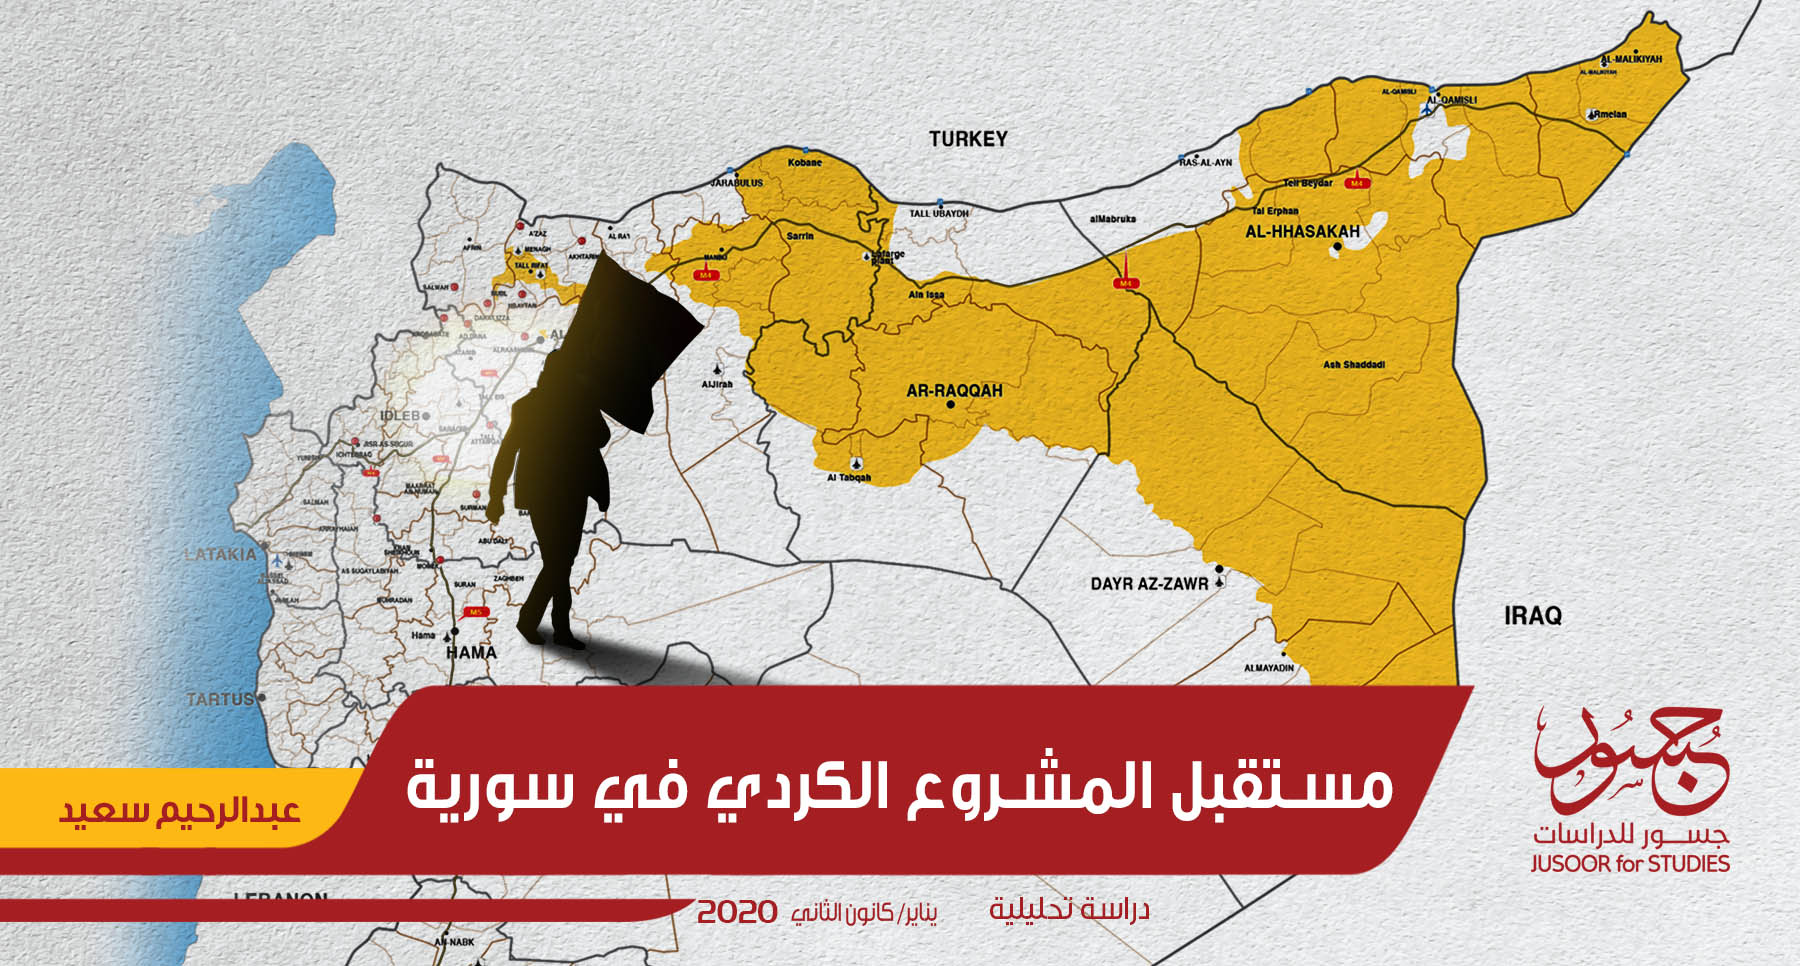 مستقبل المشروع الكردي في سورية